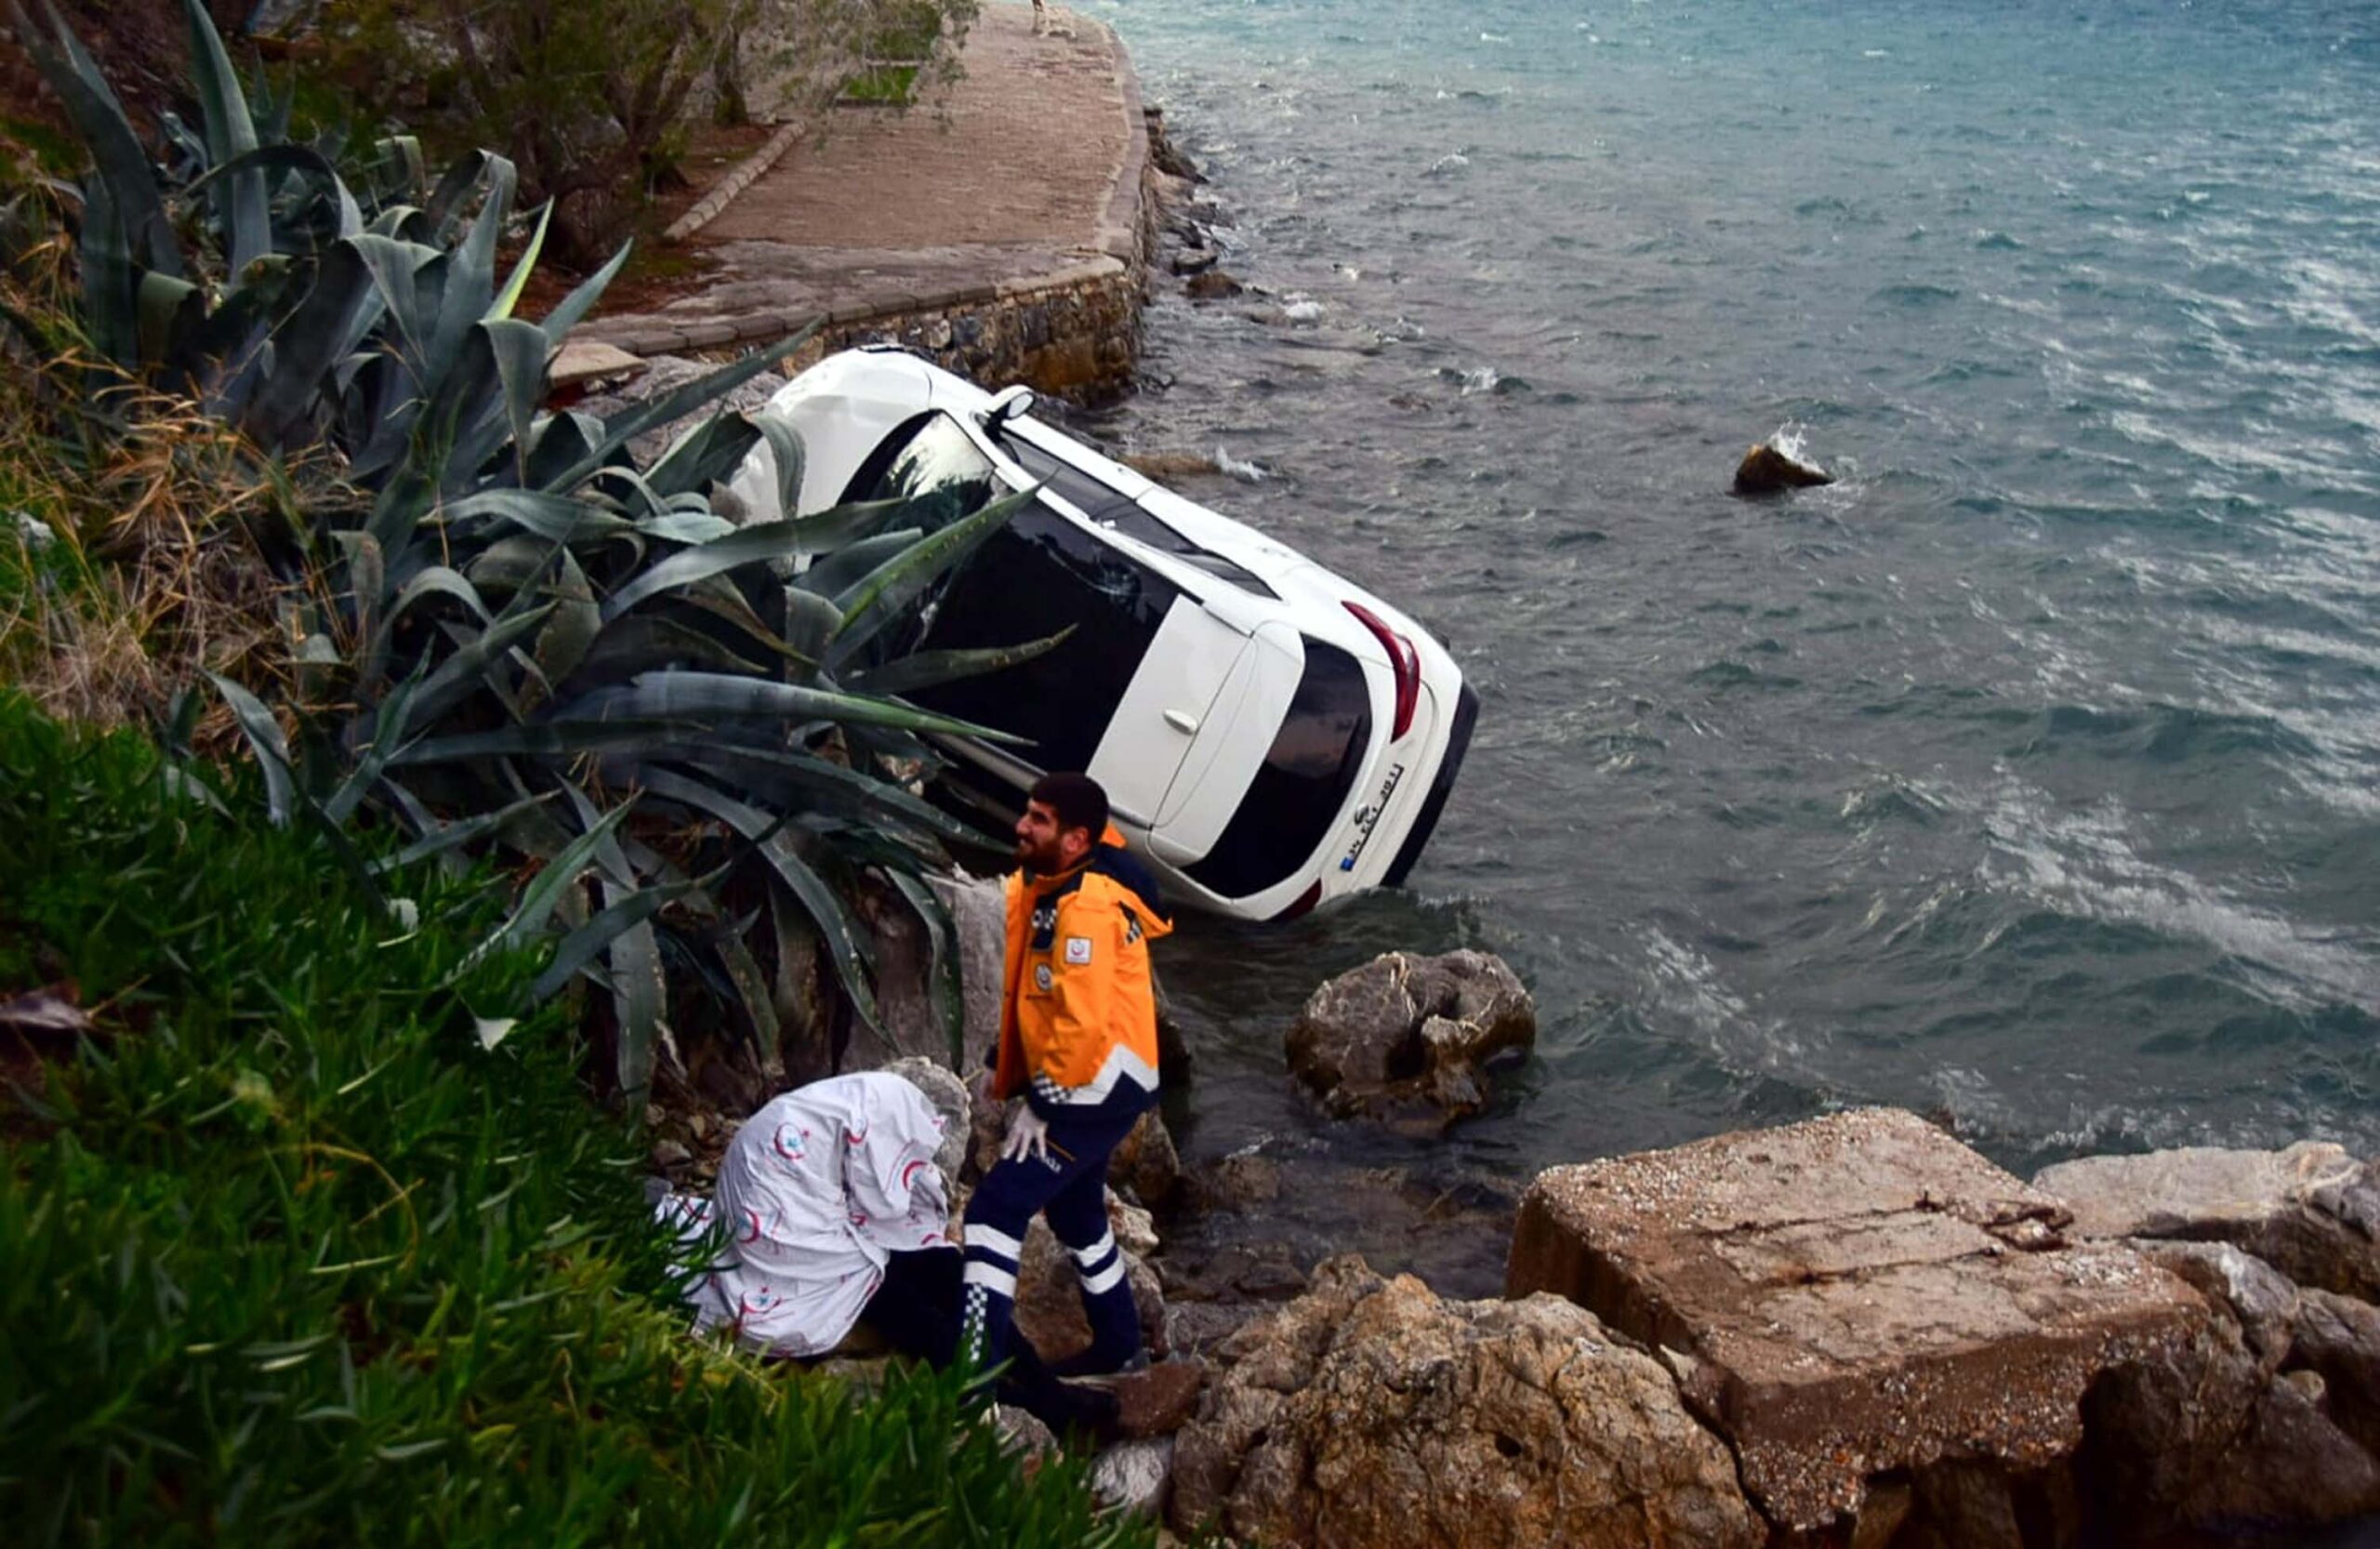 Bir otomobil, deniz kıyısındaki kayalıklara 17 metre yükseklikten düşerek yuvarlandı. Kazada bir kişi yaralandı.